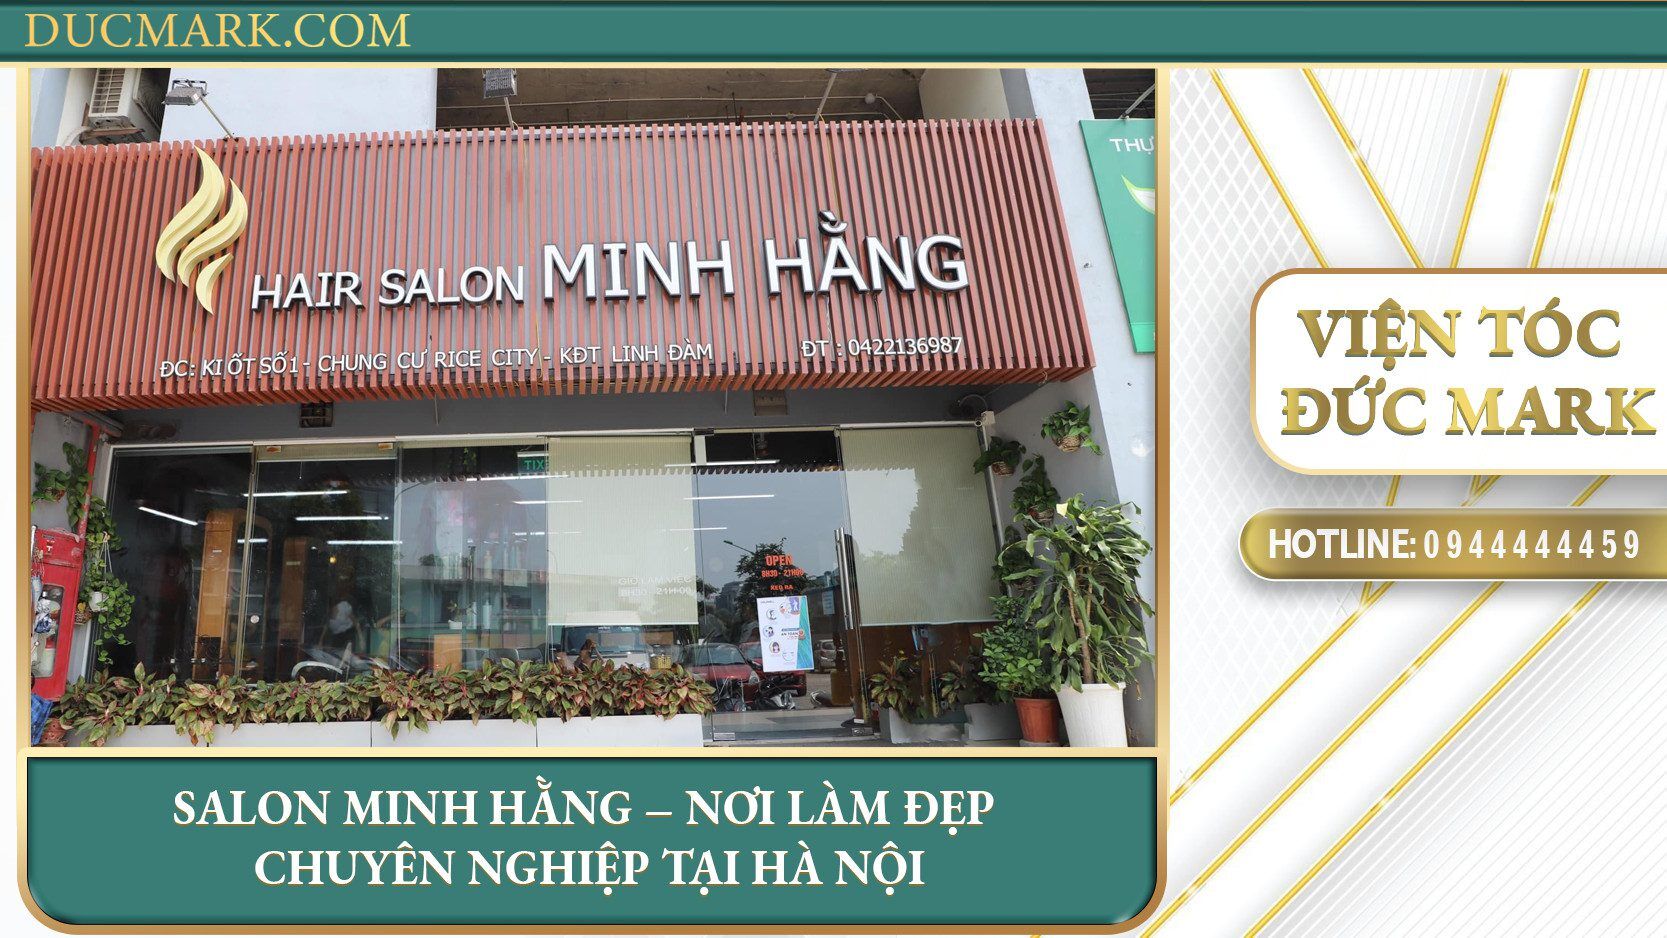 Salon Minh Hằng - Nơi làm đẹp chuyên nghiệp tại Hà Nội